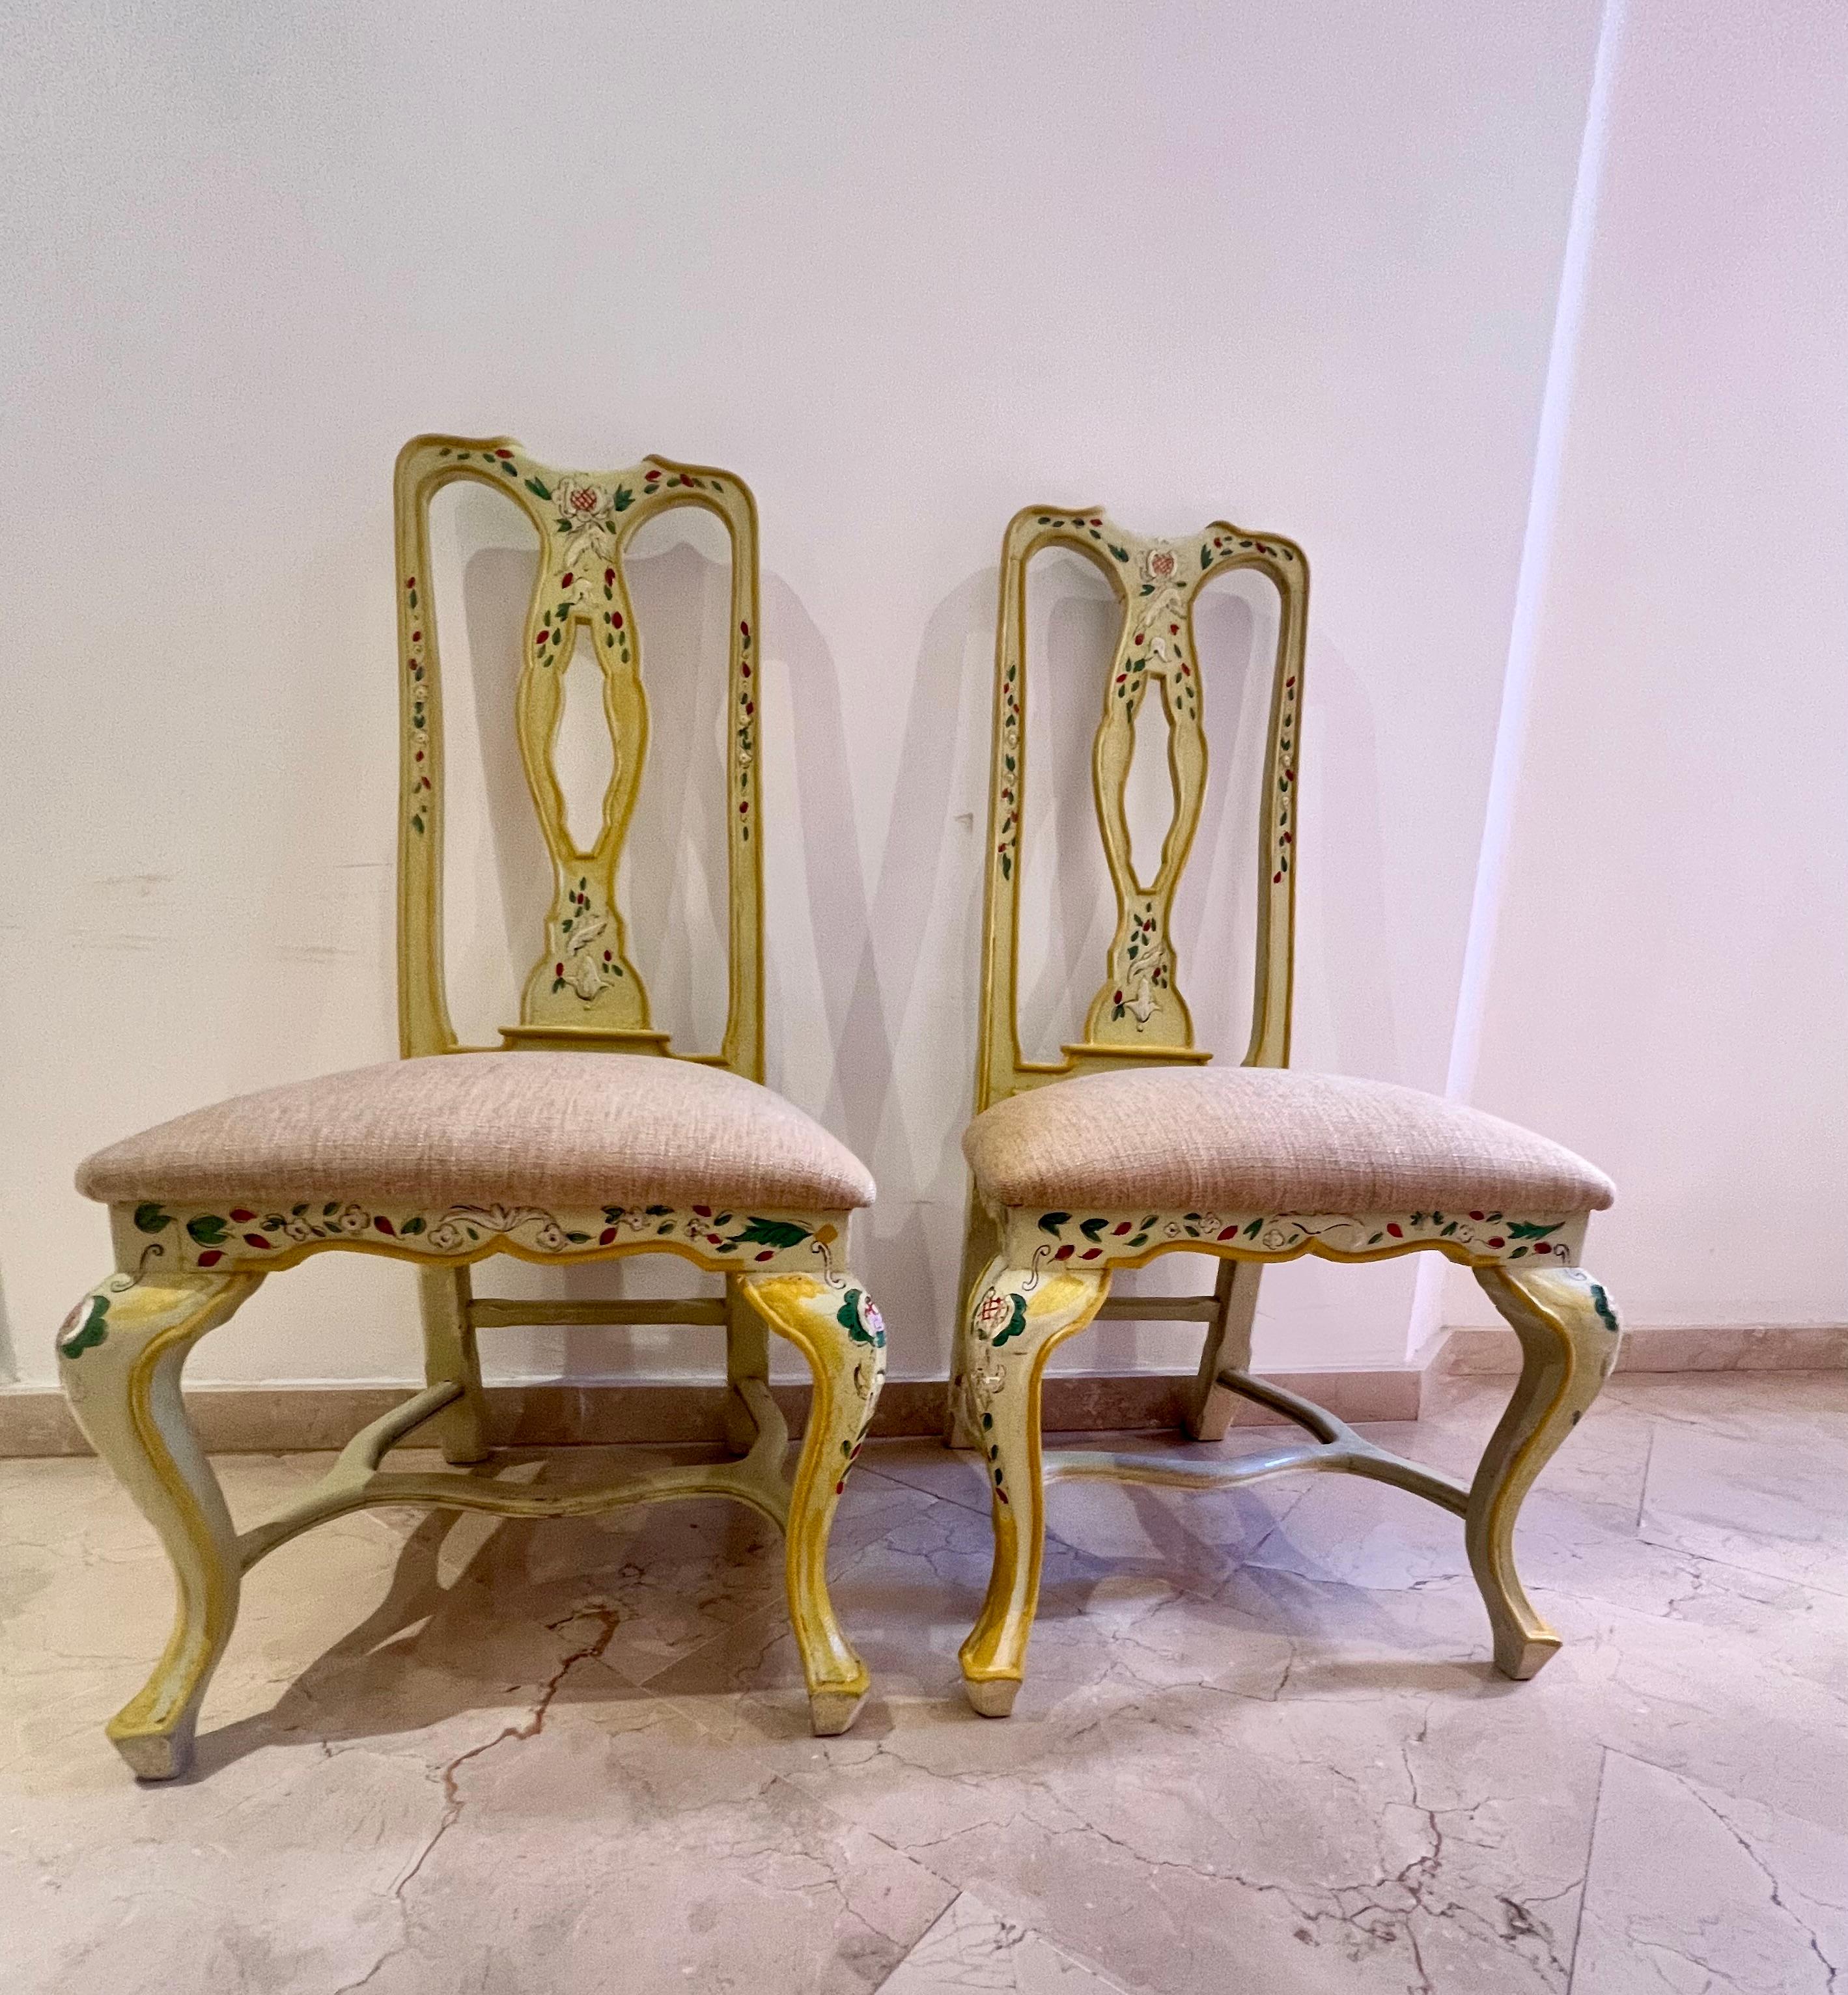 Set aus zwei Andalusianischen Stühlen aus gelbem, cremefarbenem, polychromem Holz mit Vögeln 
Aus den 1980er Jahren
Sehr romantisch mit einem klassischen Kreide-Finish für Innenräume mit einem sanften Landhausstil
Polsterung mit fleckabweisendem